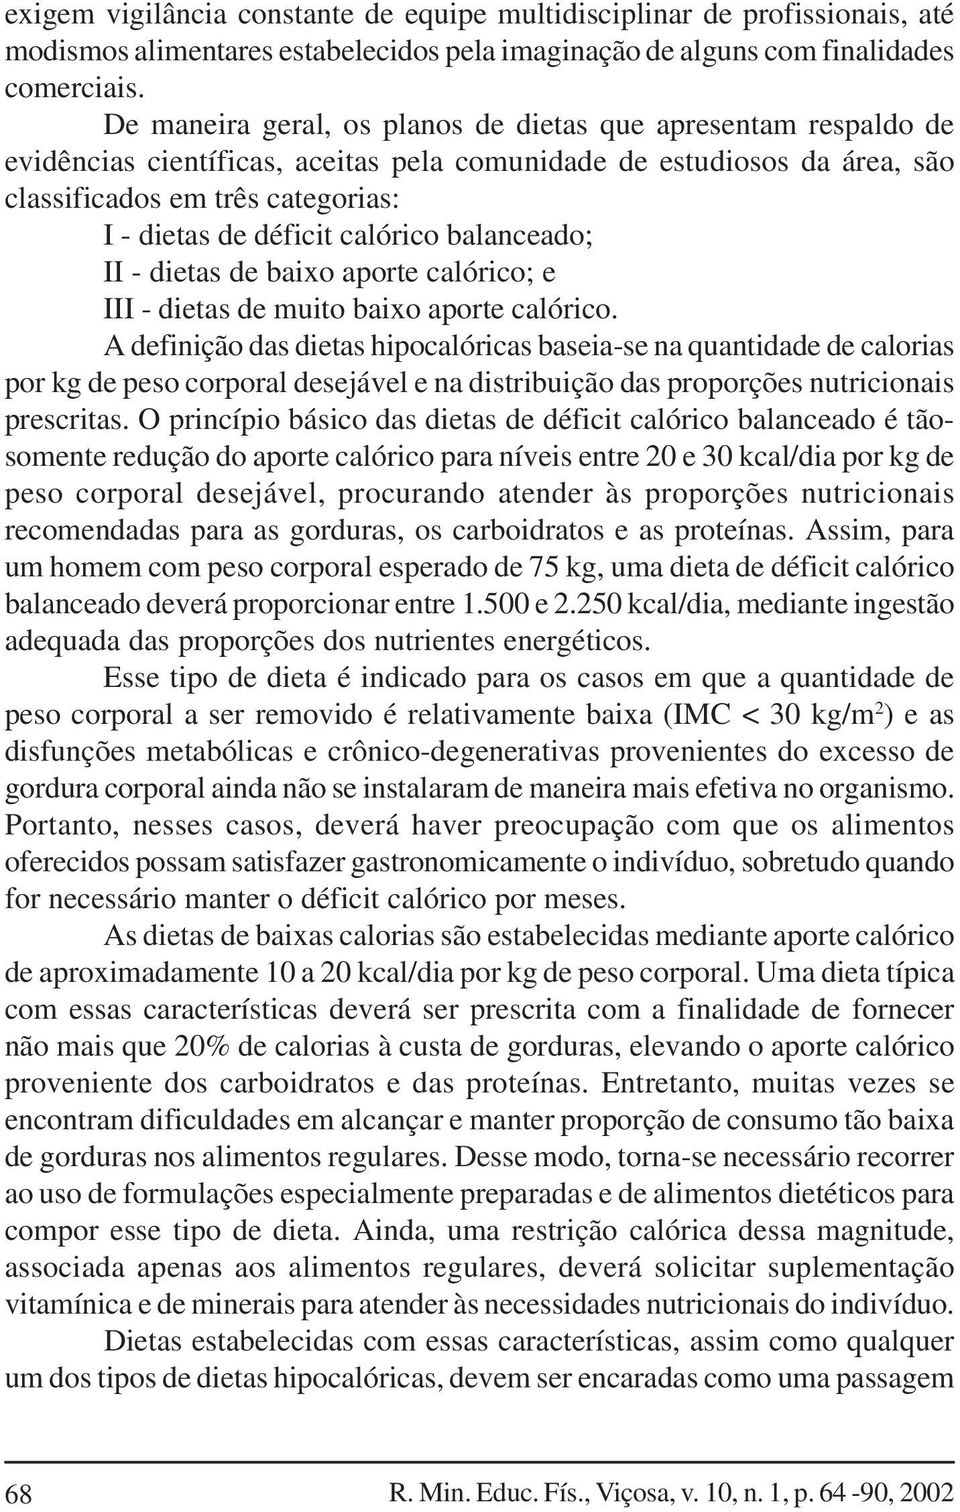 calórico balanceado; II - dietas de baixo aporte calórico; e III - dietas de muito baixo aporte calórico.